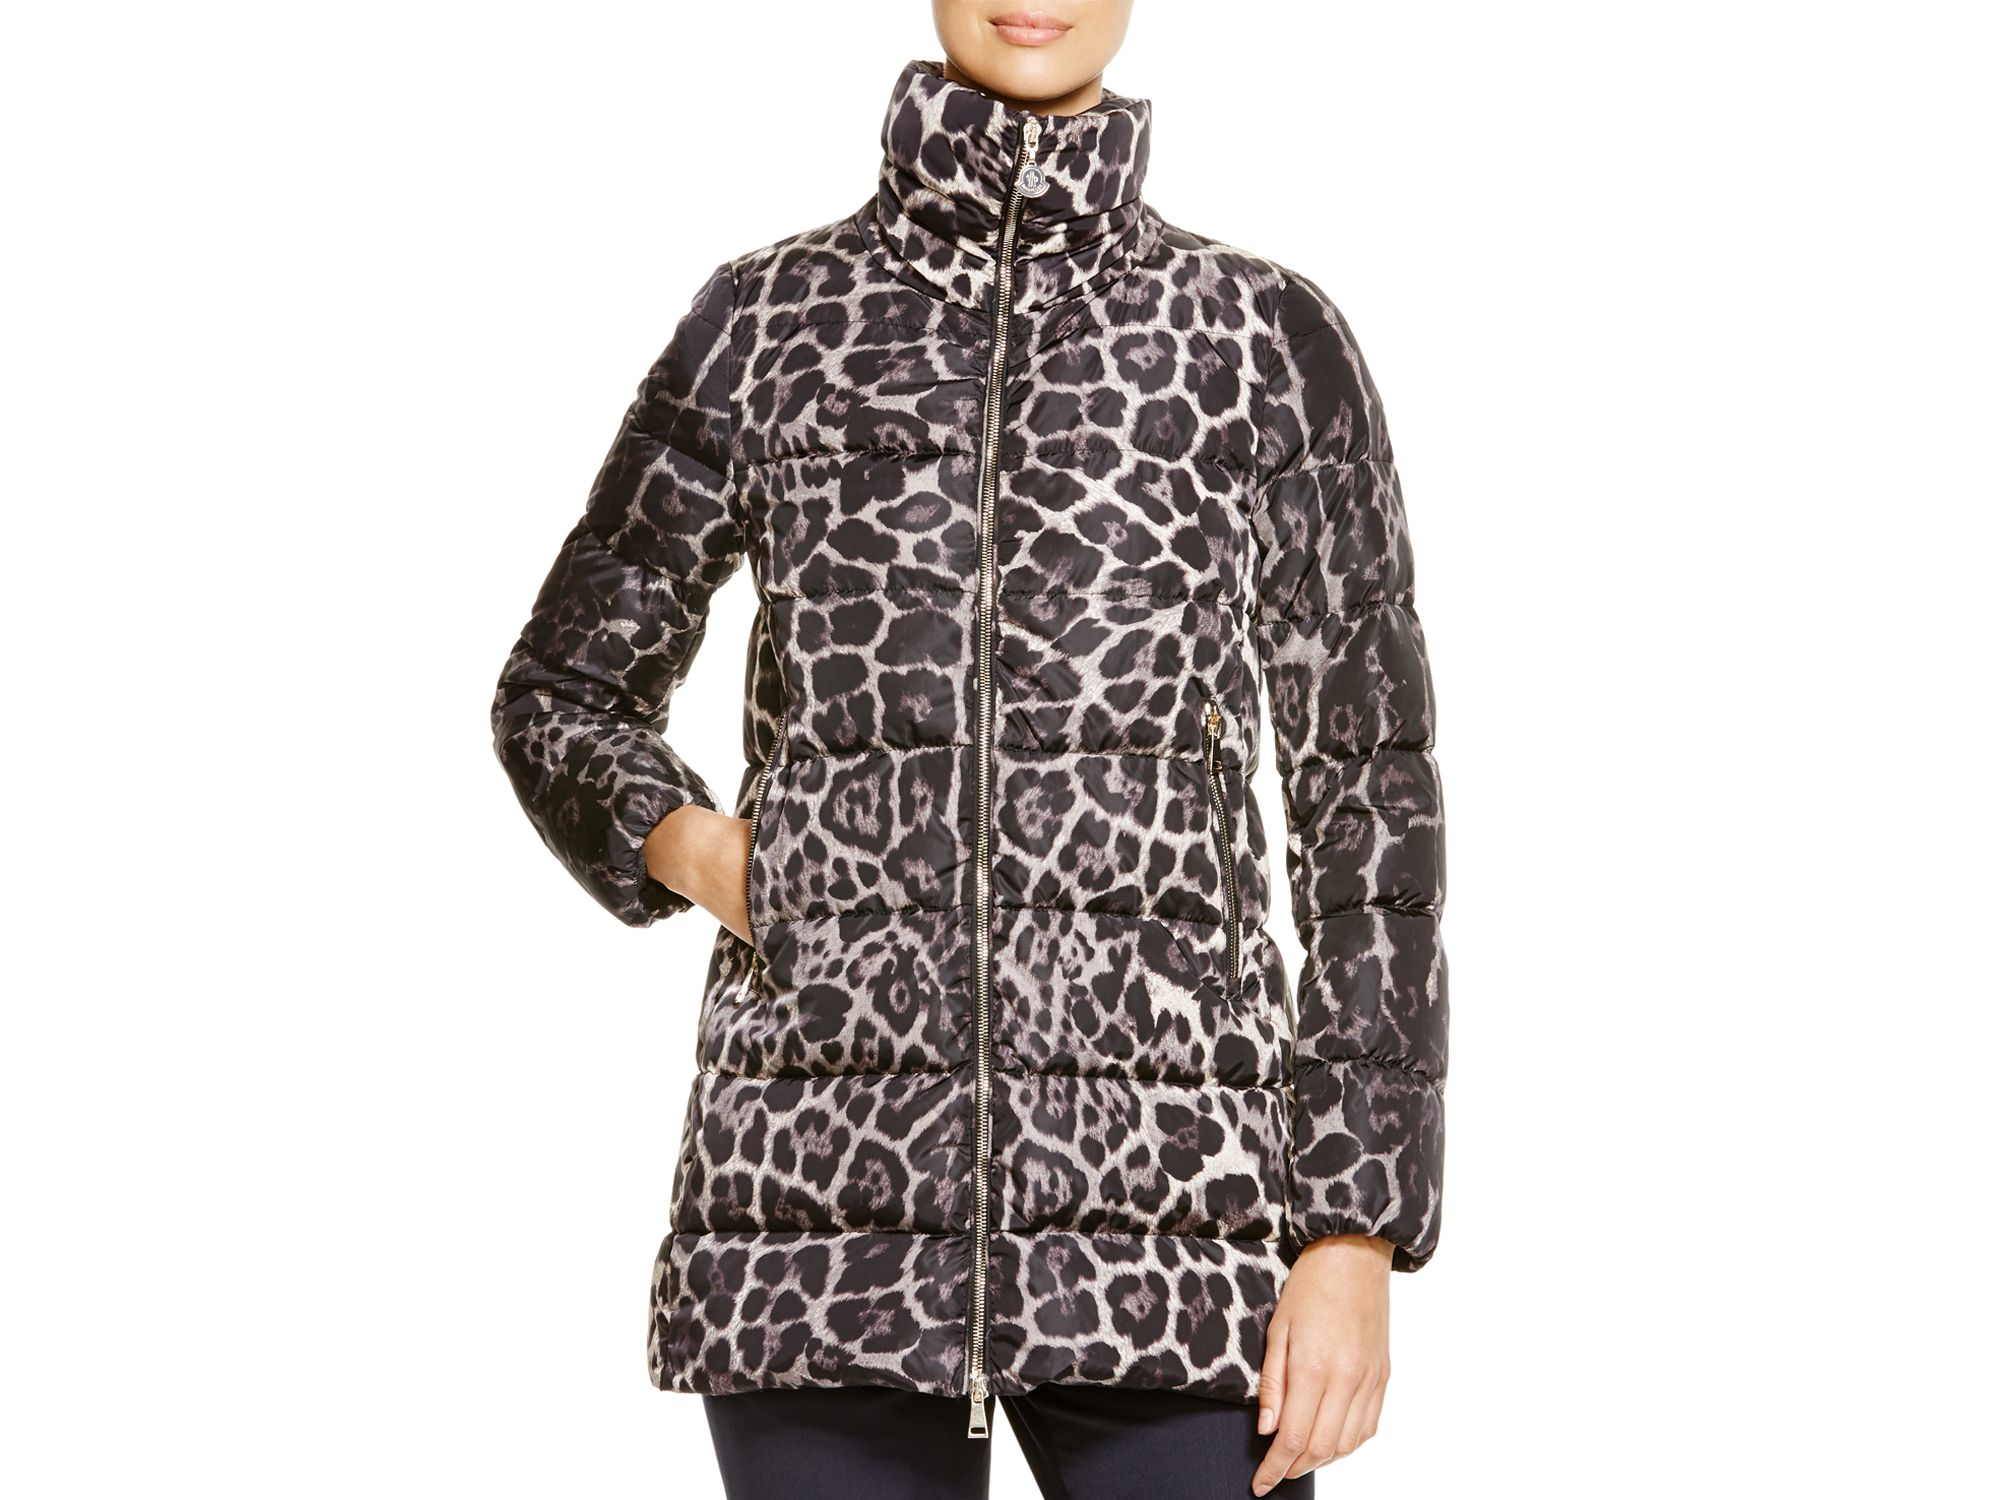 moncler leopard print coat,Quality assurance,protein-burger.com